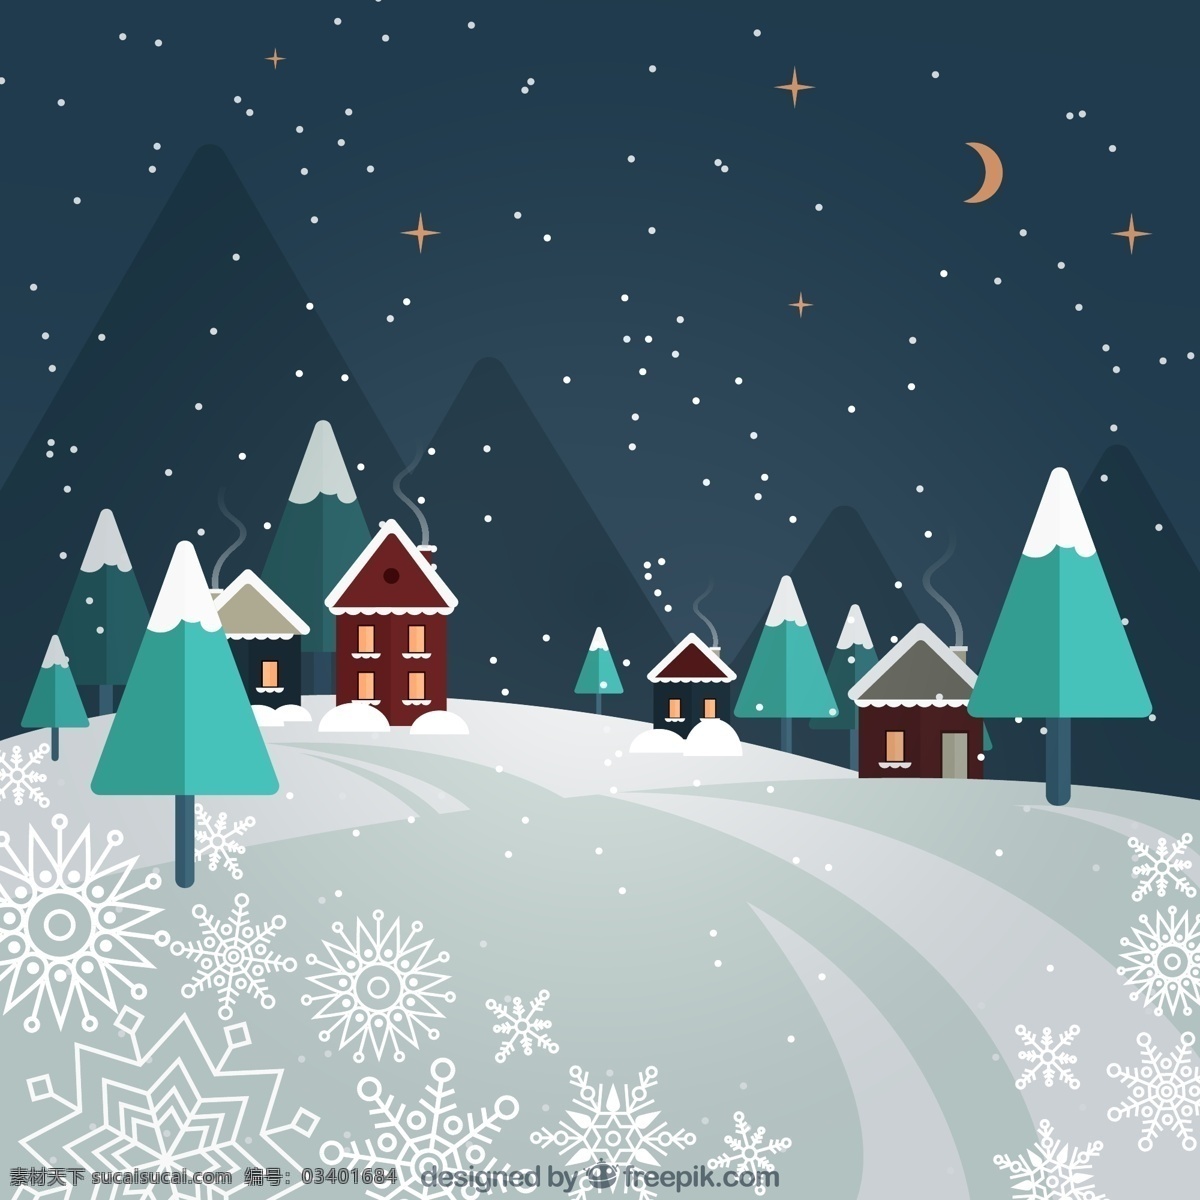 冬季 夜晚 雪 中 小城 树木 雪地 星星 月亮 山 雪花 城镇 房屋 动漫动画 风景漫画